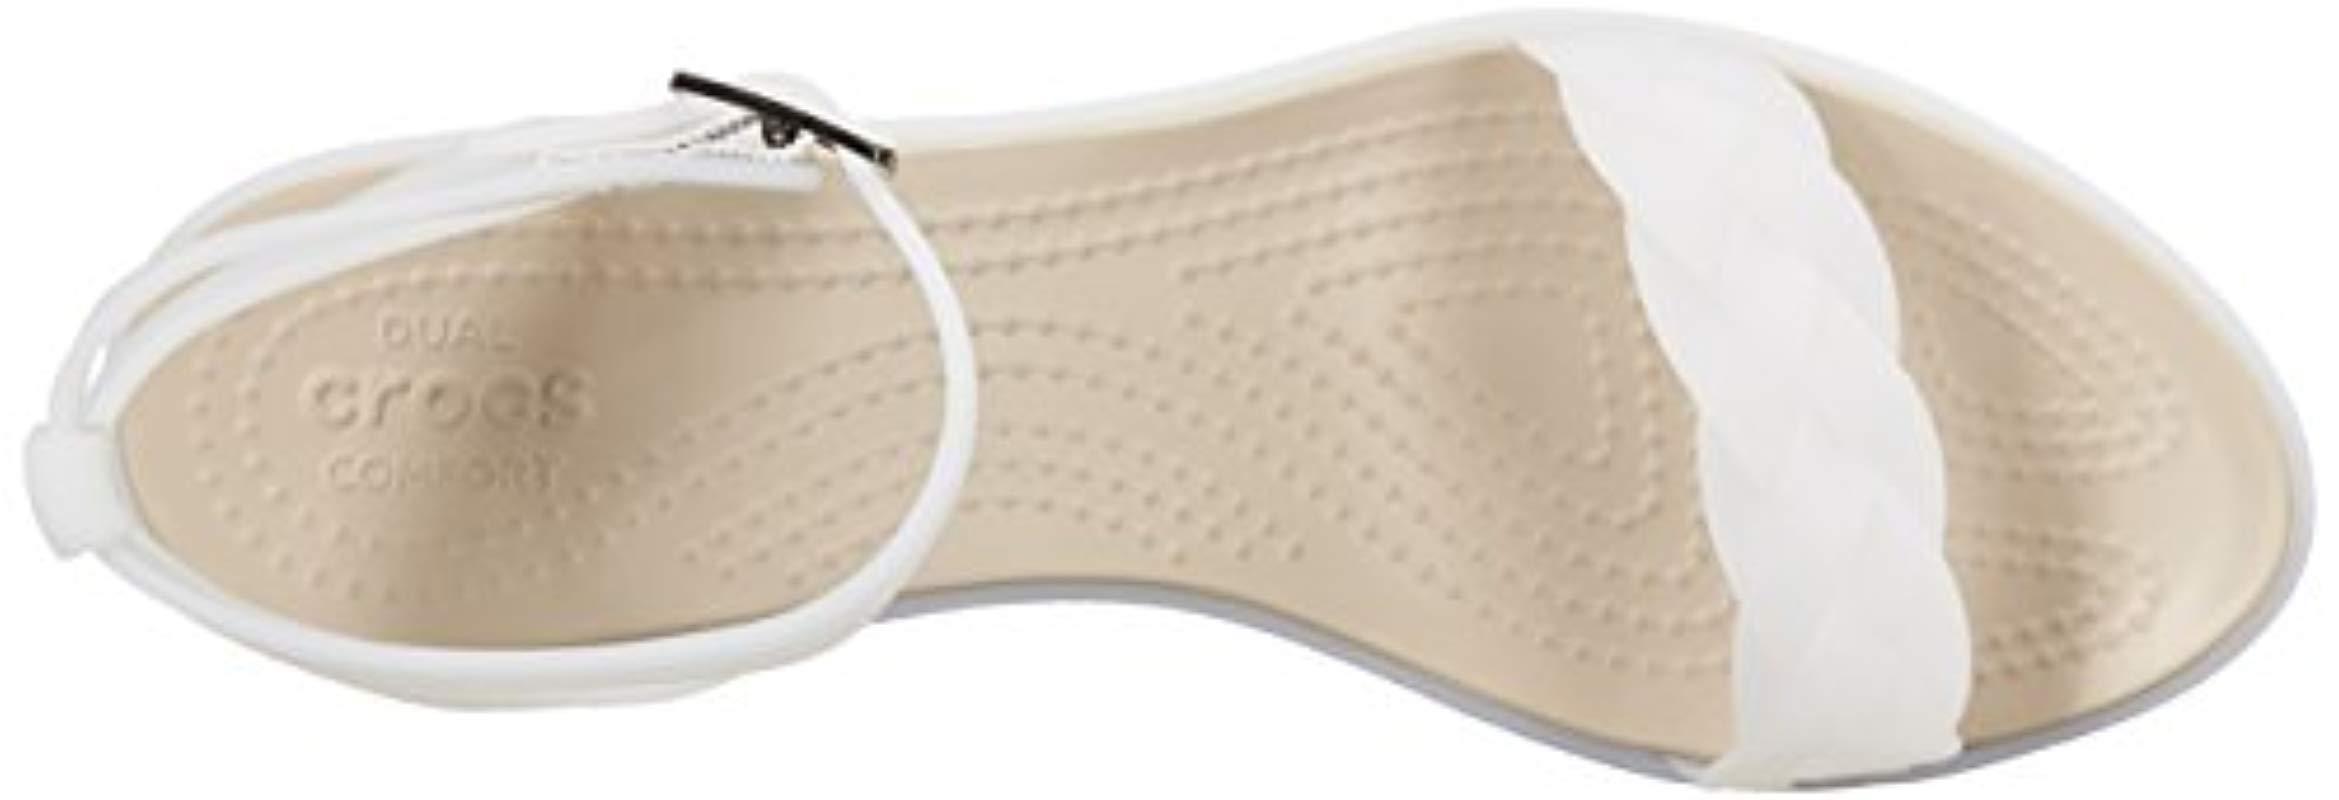 crocs women's isabella block heel wedge sandal